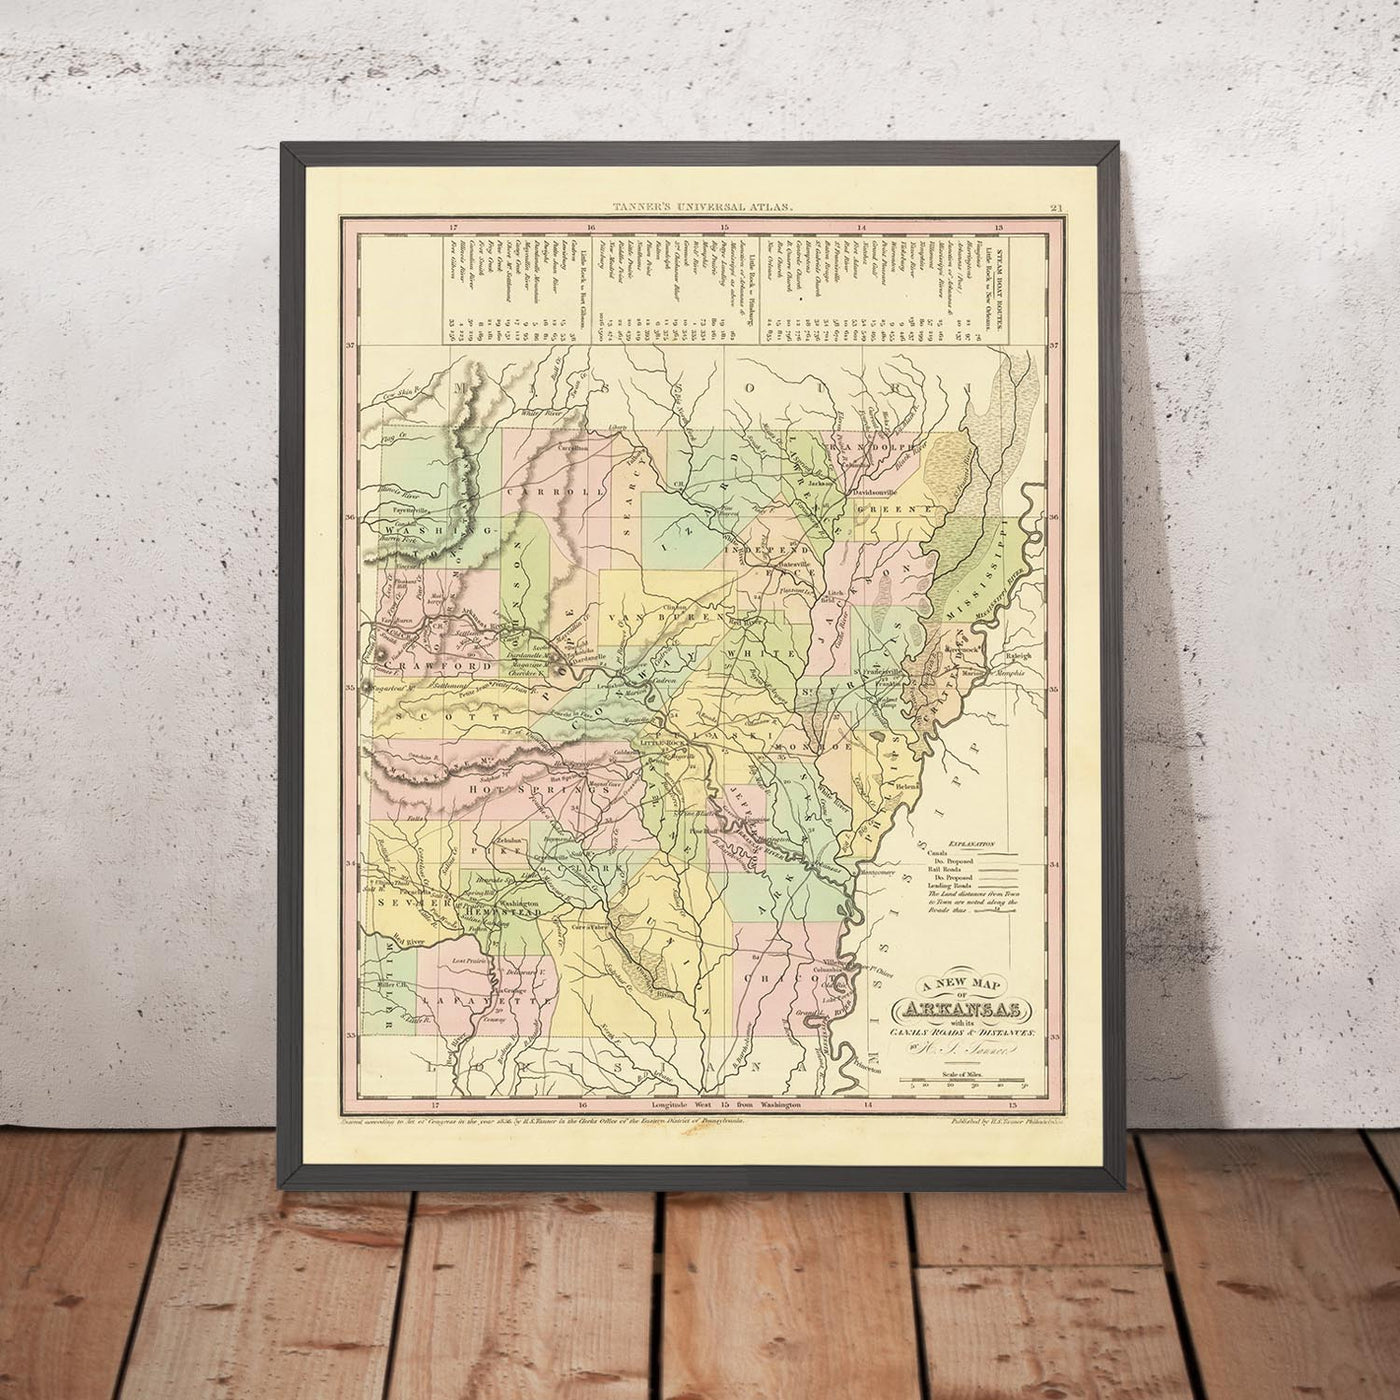 Alte Karte von Arkansas von H. S. Tanner, 1836: Little Rock, Fort Smith, Pine Bluff, Batesville, Washington, Straßen, Eisenbahn, Kanäle